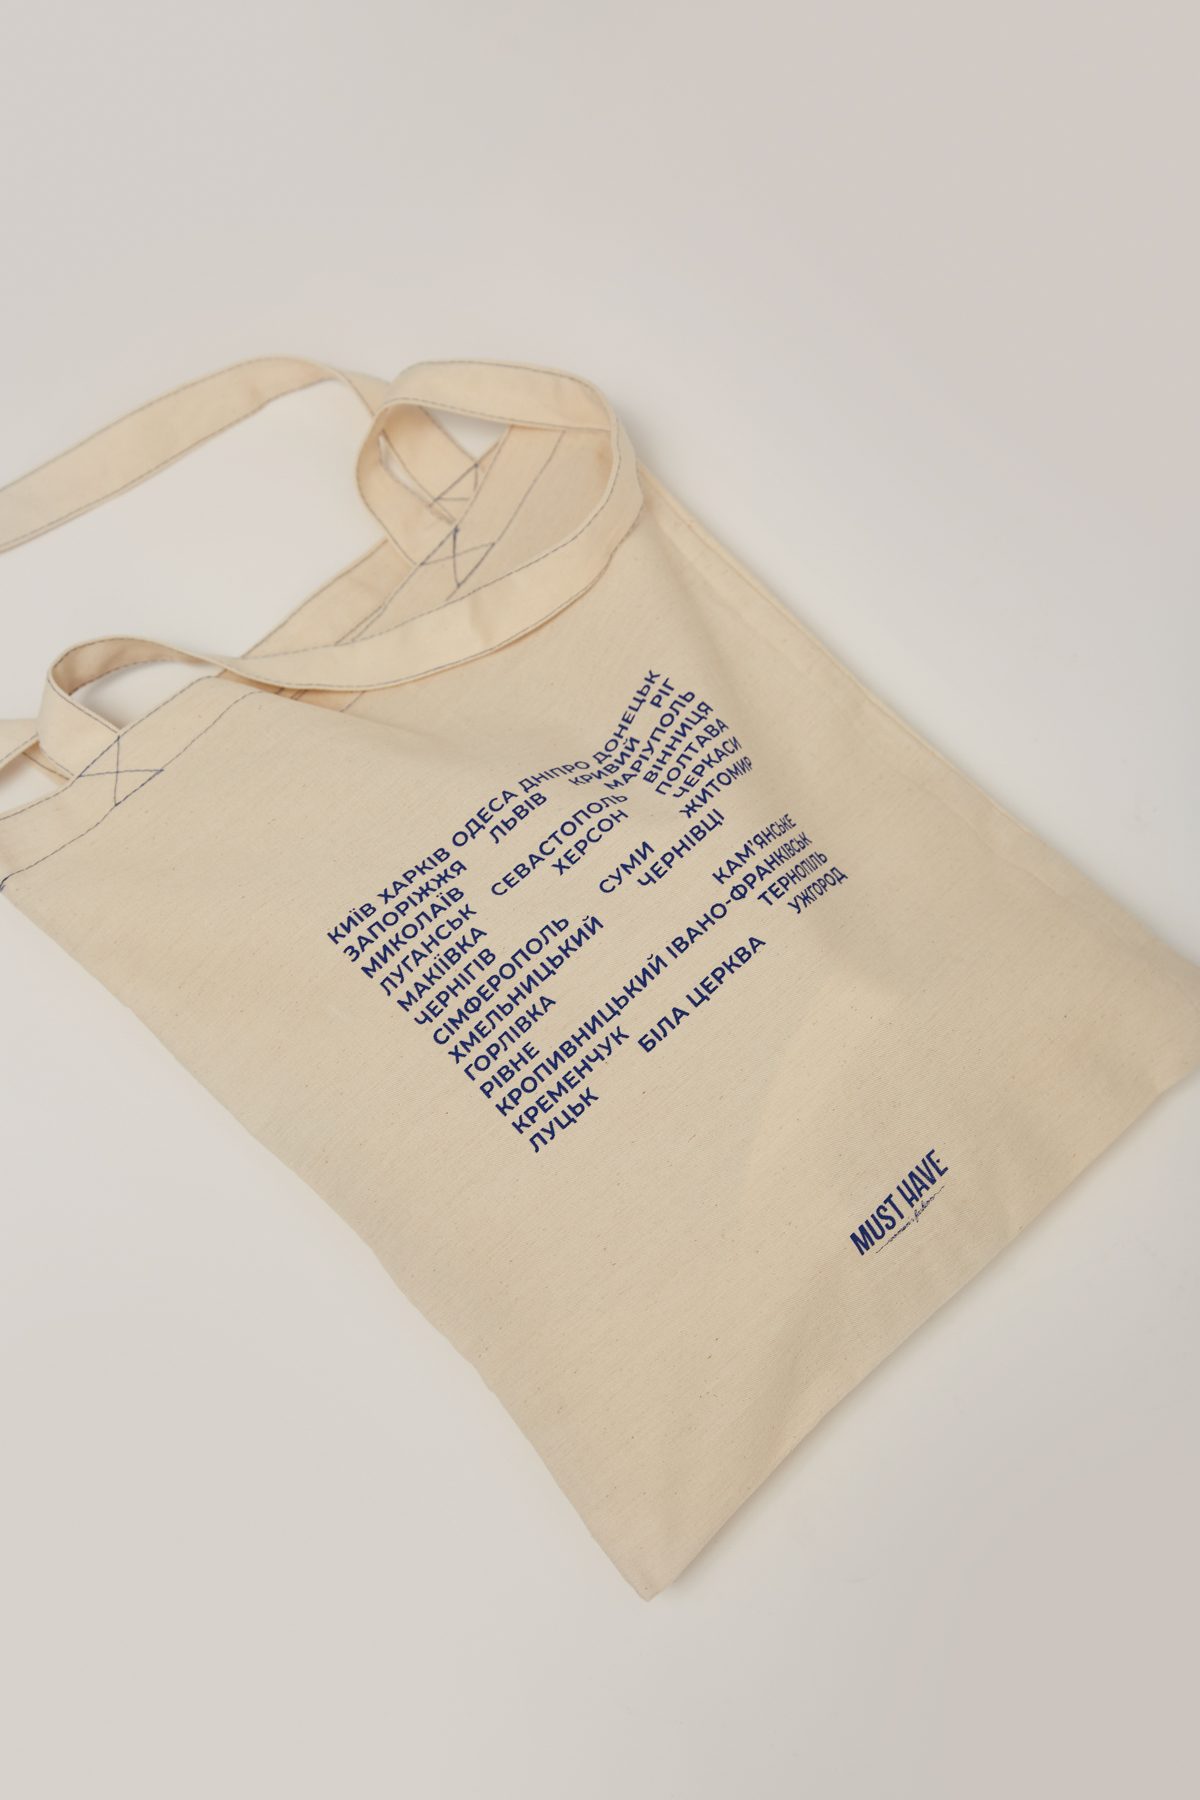 Бежевая сумка-шоппер из хлопка с надписью "Міста", фото 4